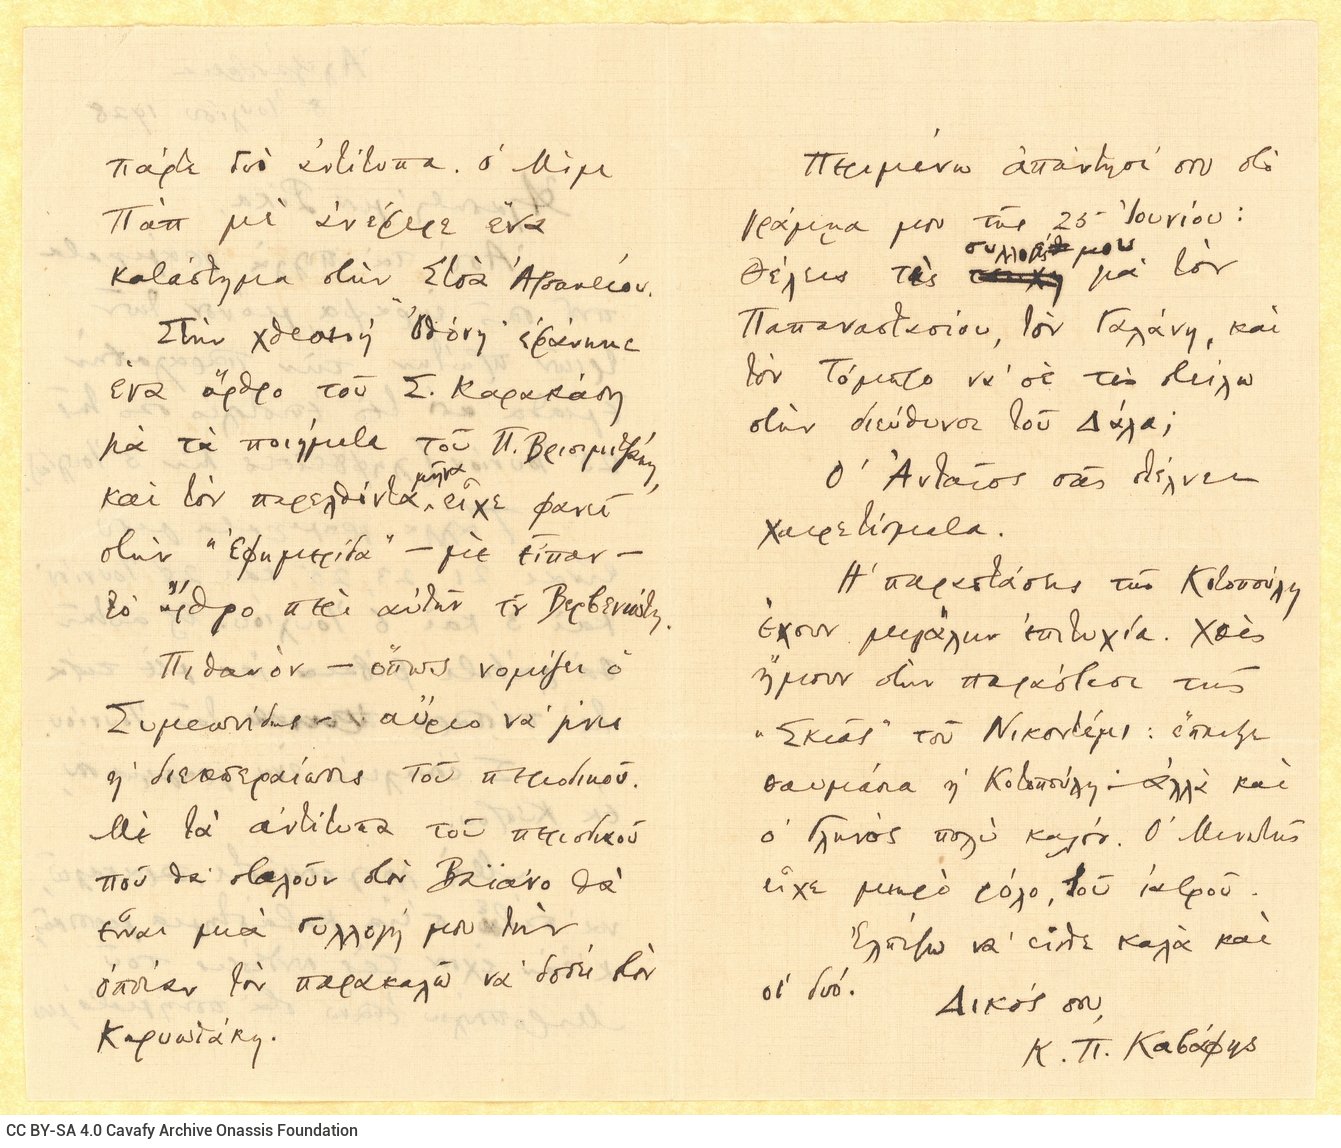 Χειρόγραφη επιστολή του Καβάφη προς τη Ρίκα [Σεγκοπούλου] στις τρεις